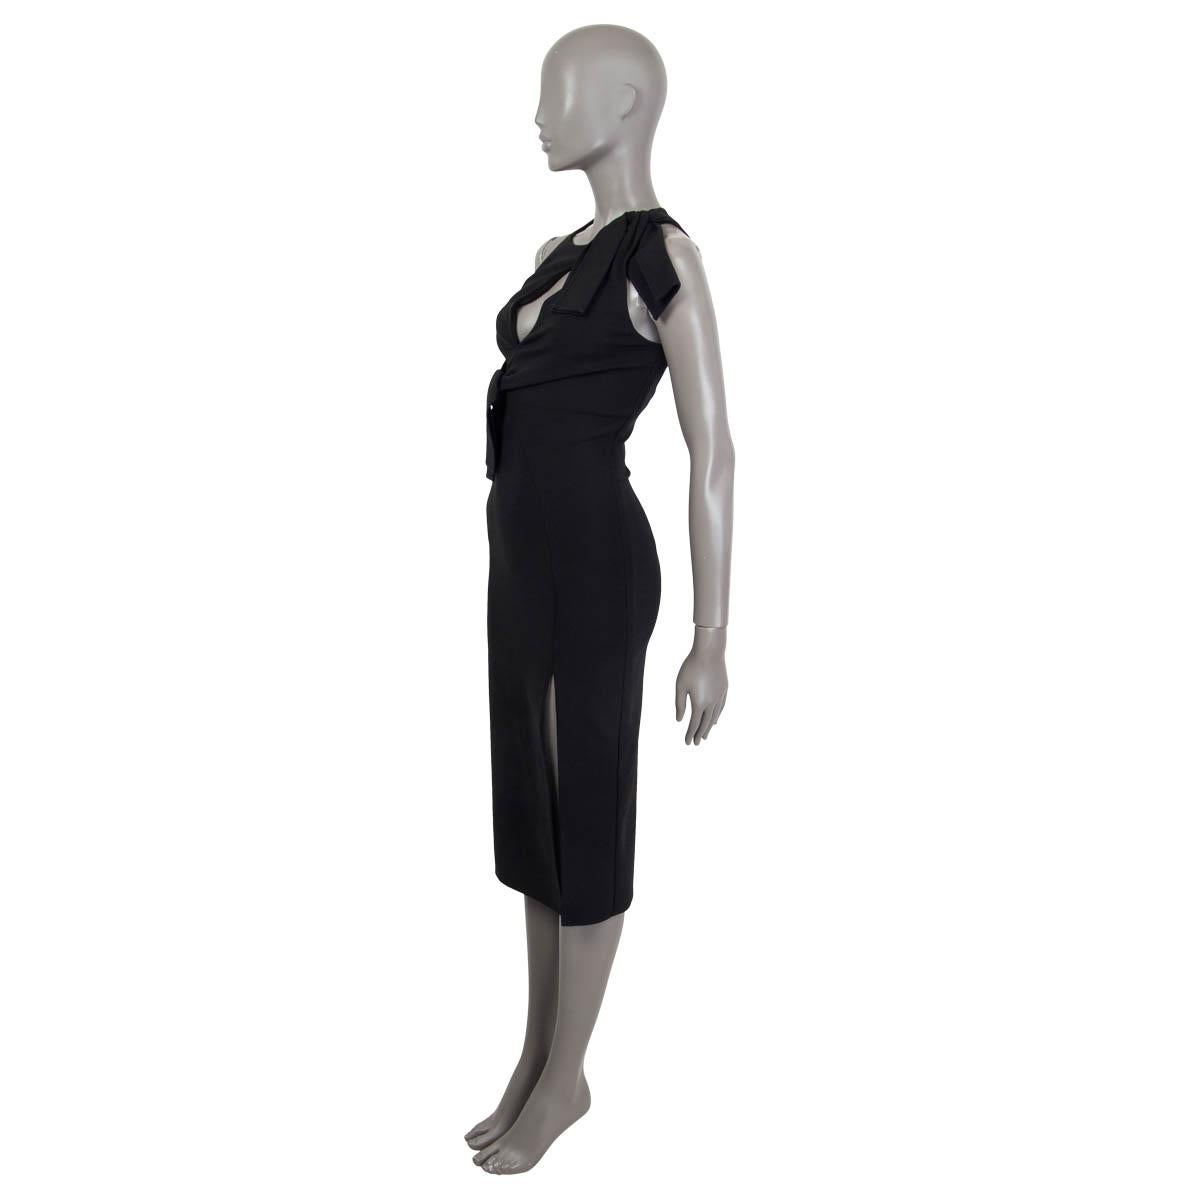 robe sans manches 100% authentique Versace en viscose noire (78%), nylon (16%) et élasthanne (6%). Il présente des découpes, une fente sur le devant et deux nœuds sur le devant. S'ouvre avec une fermeture éclair dissimulée et un crochet à l'arrière.